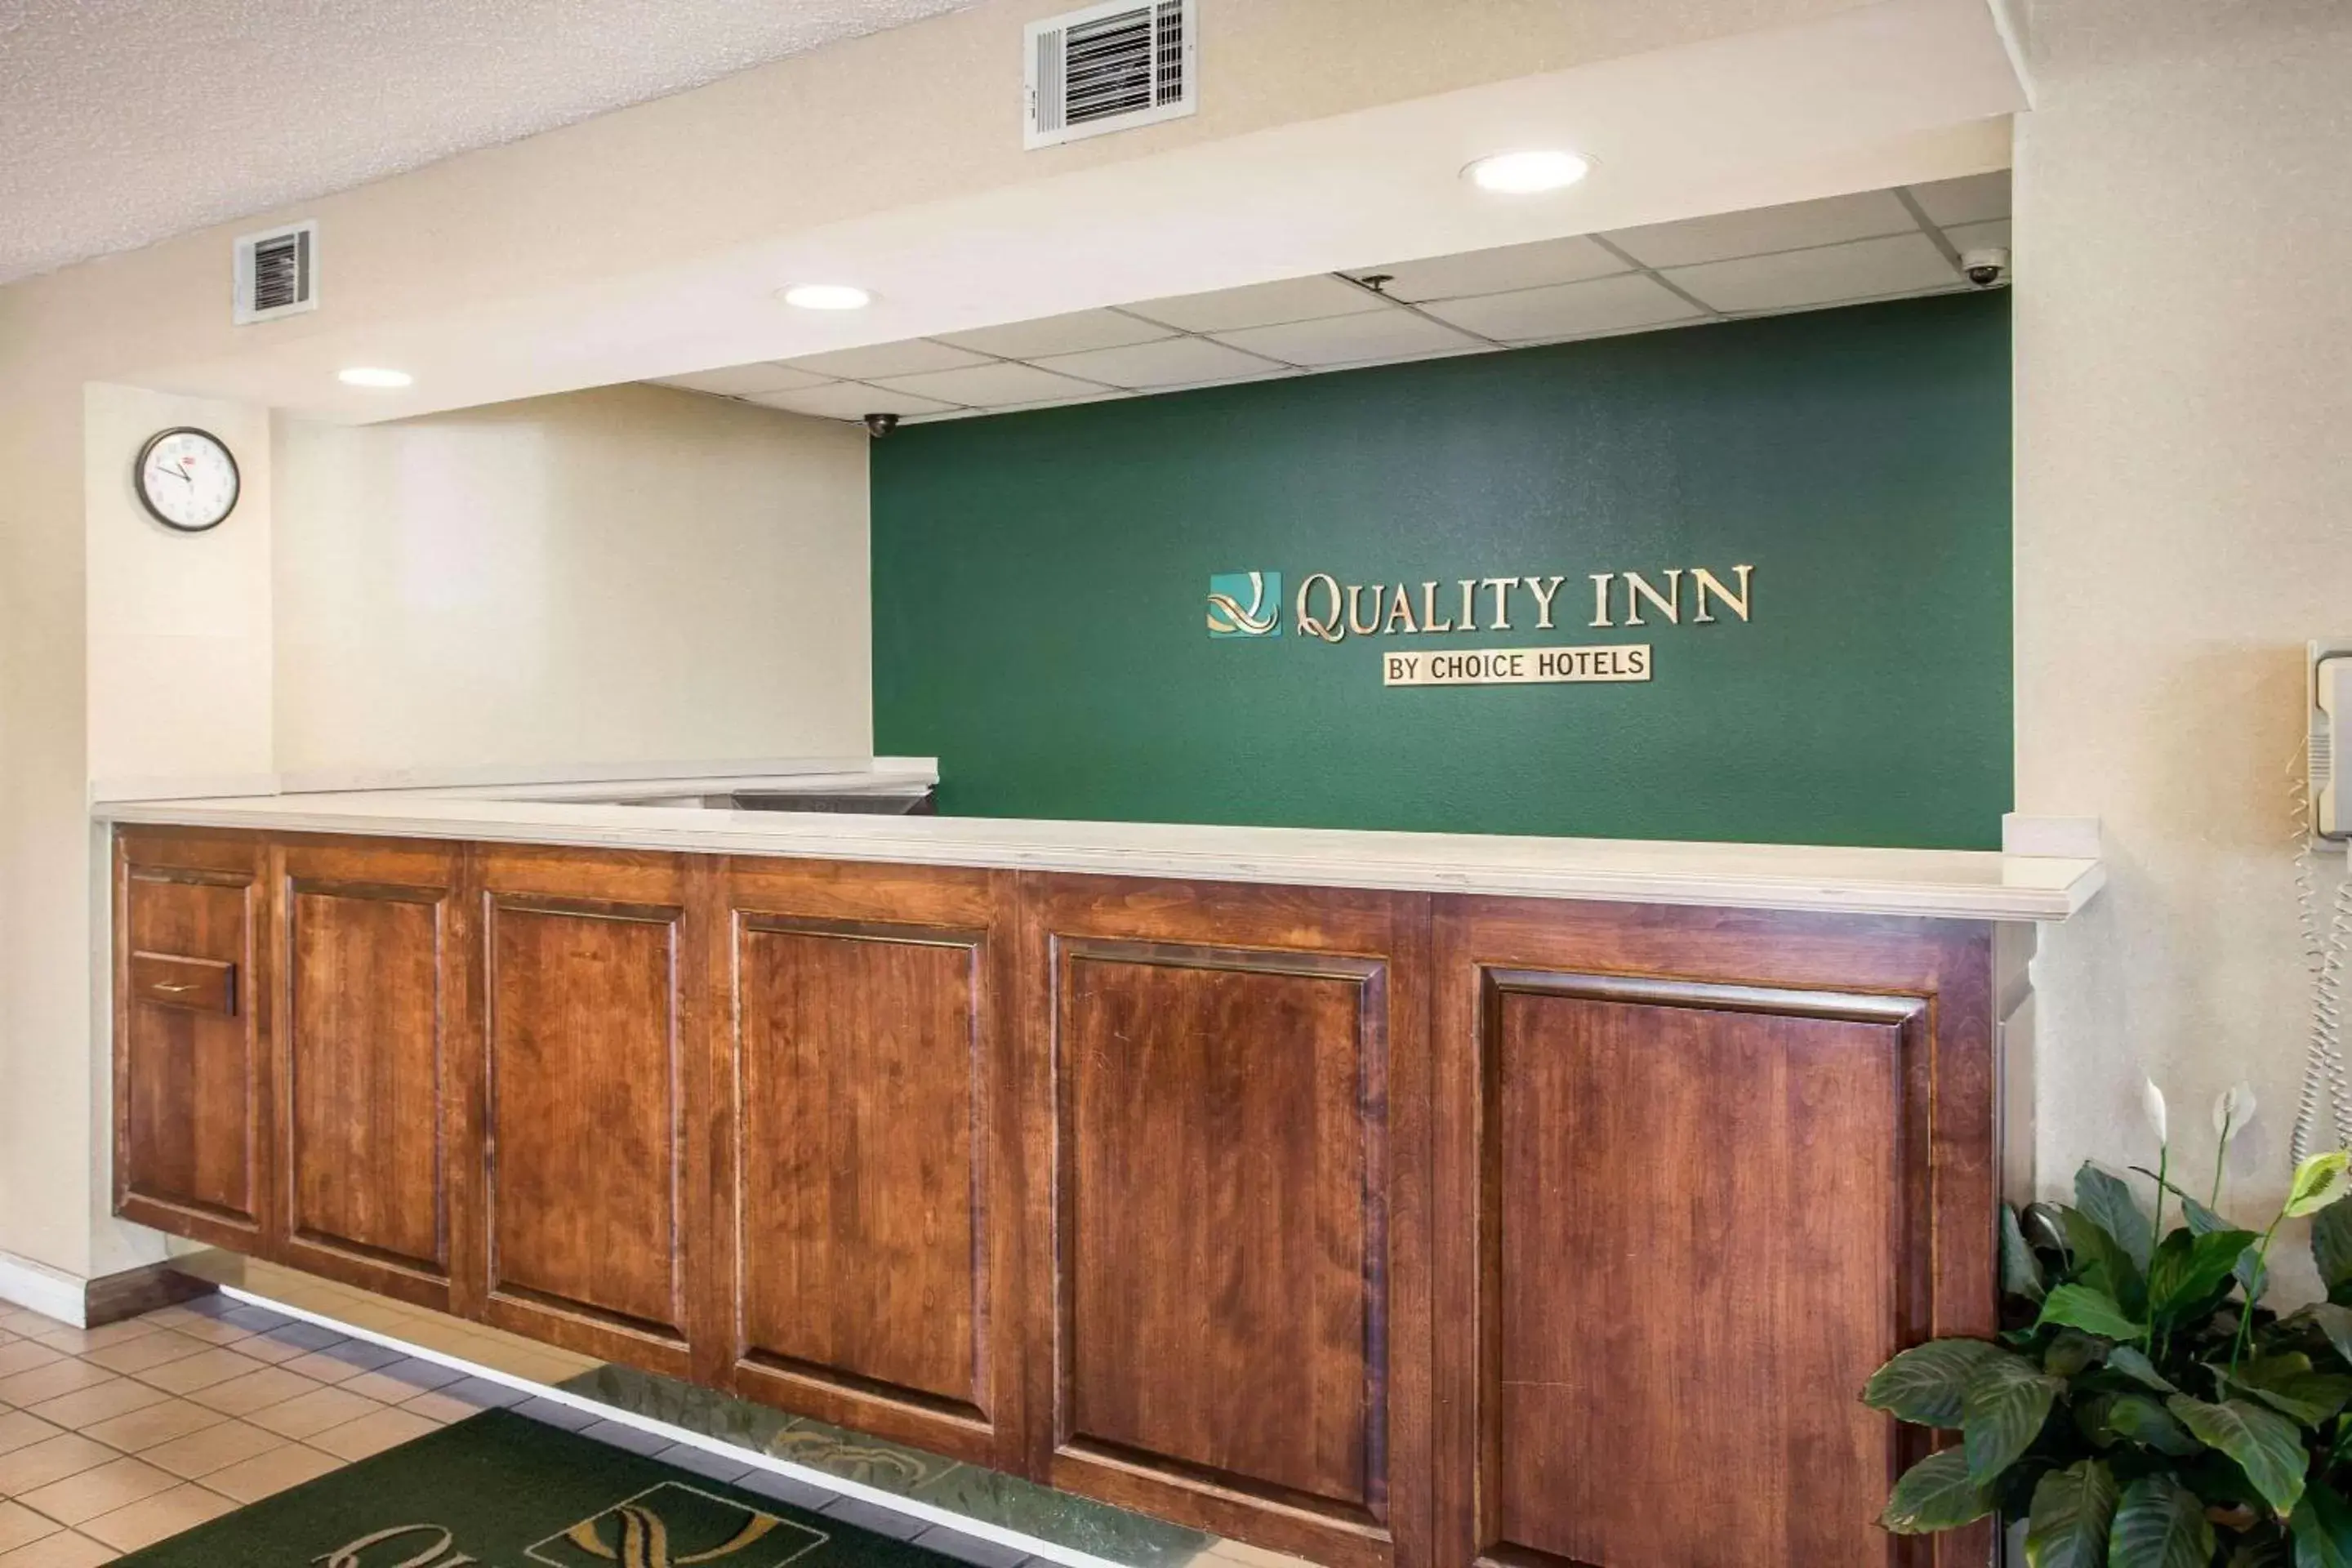 Lobby or reception, Lobby/Reception in Quality Inn Aiken